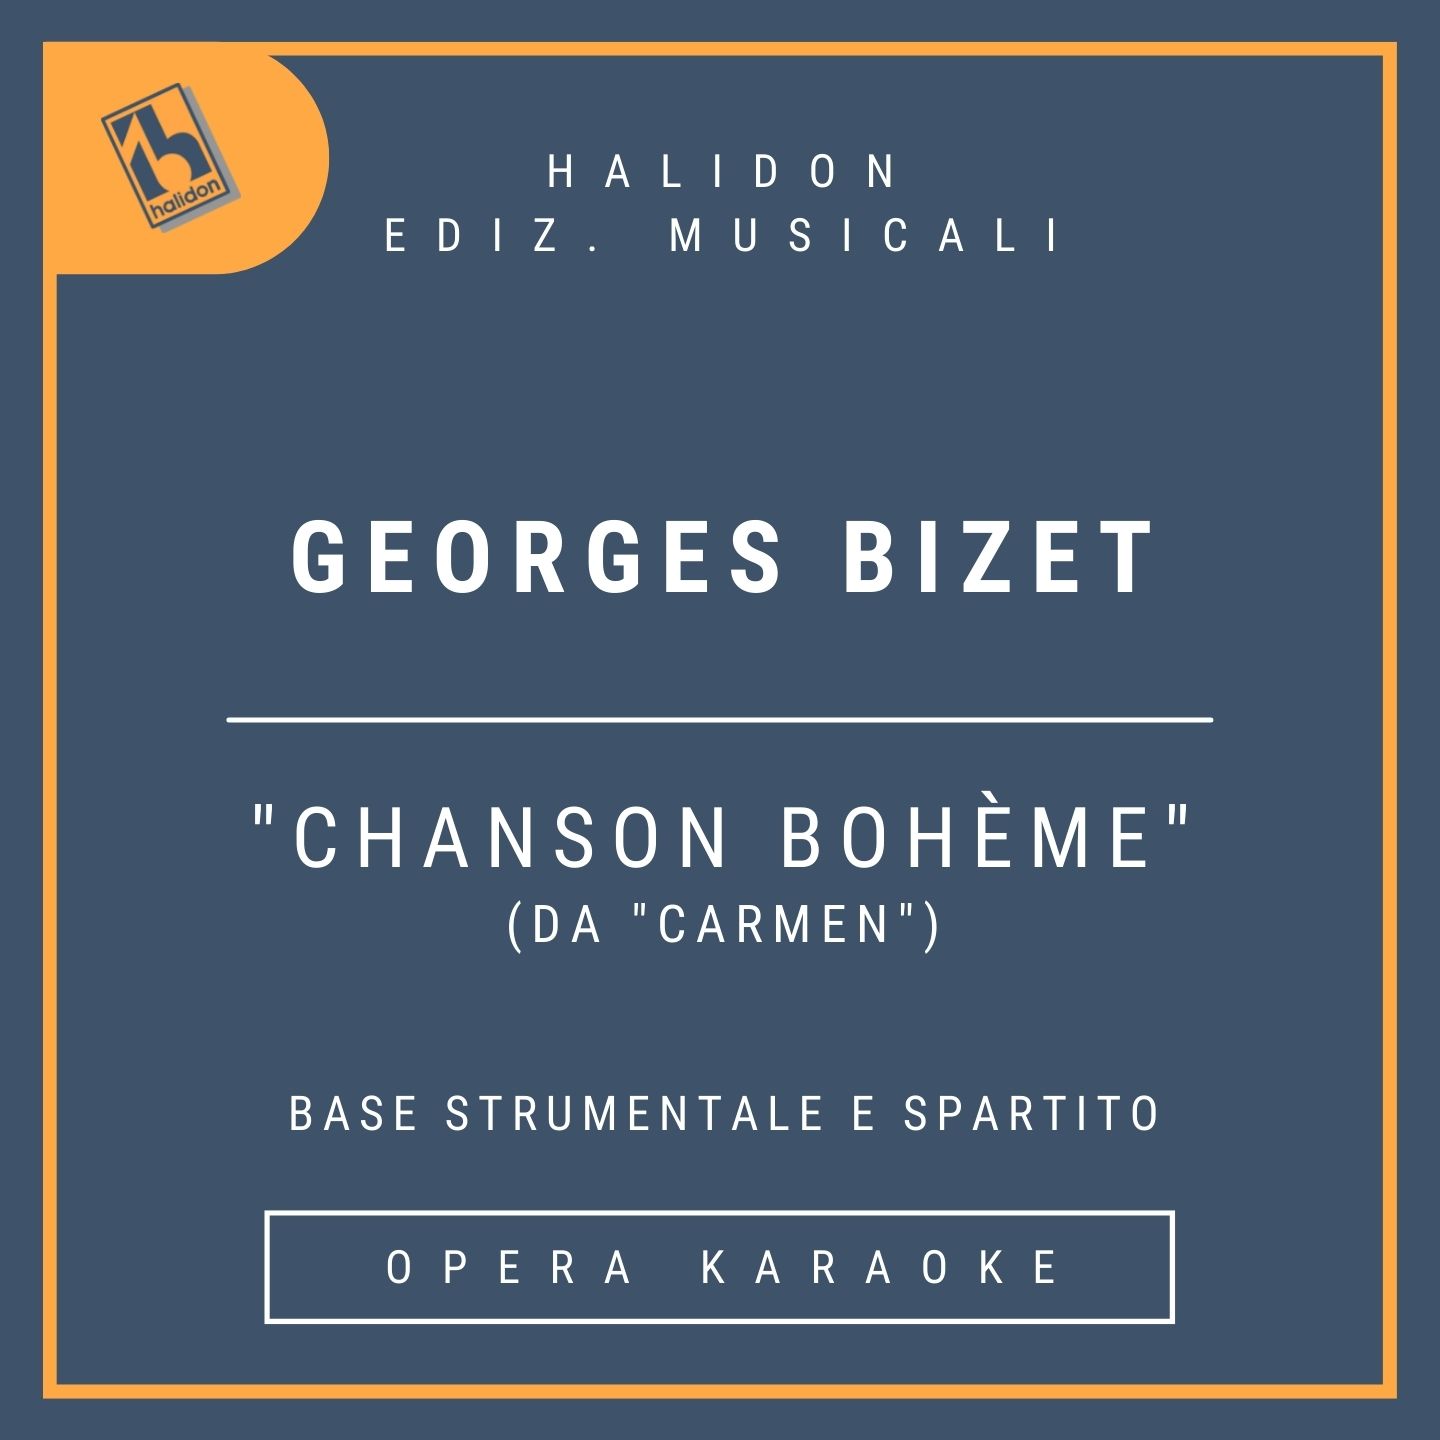 Georges Bizet - Chanson bohème (da 'Carmen') - Aria-terzetto di Carmen (mezzosoprano) - Base strumentale + spartito